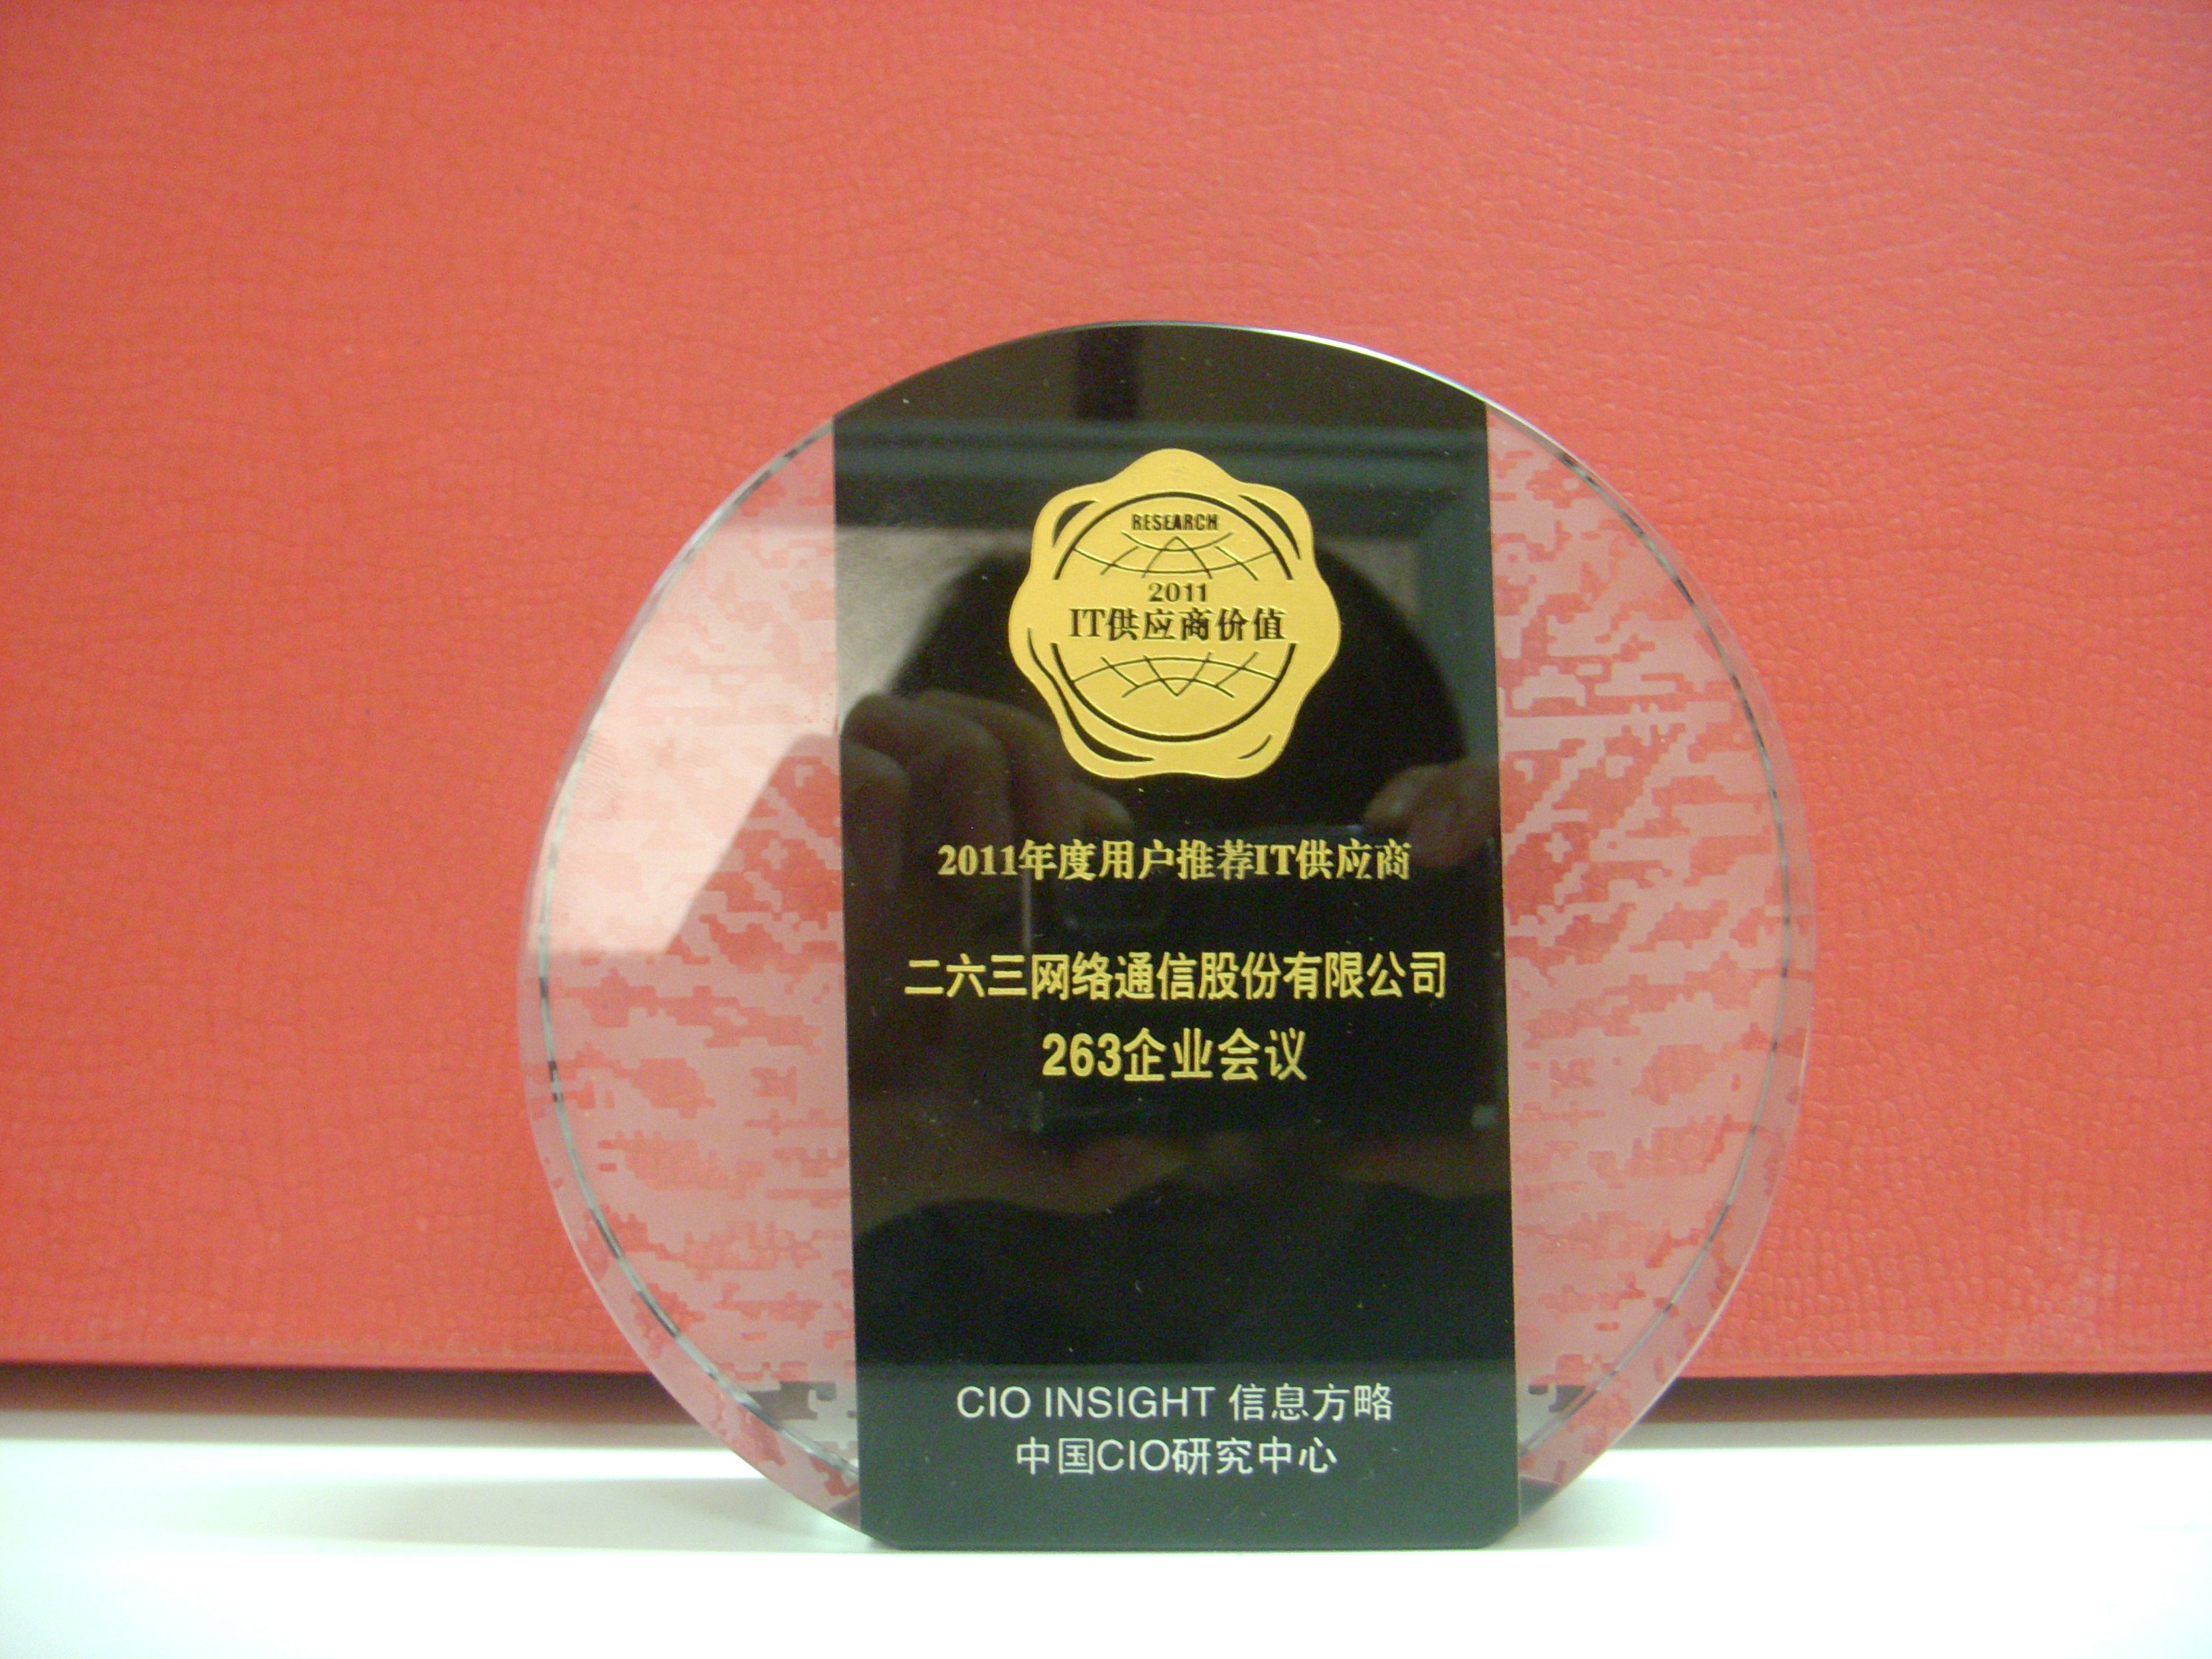 2011年度用戶推薦IT供應商